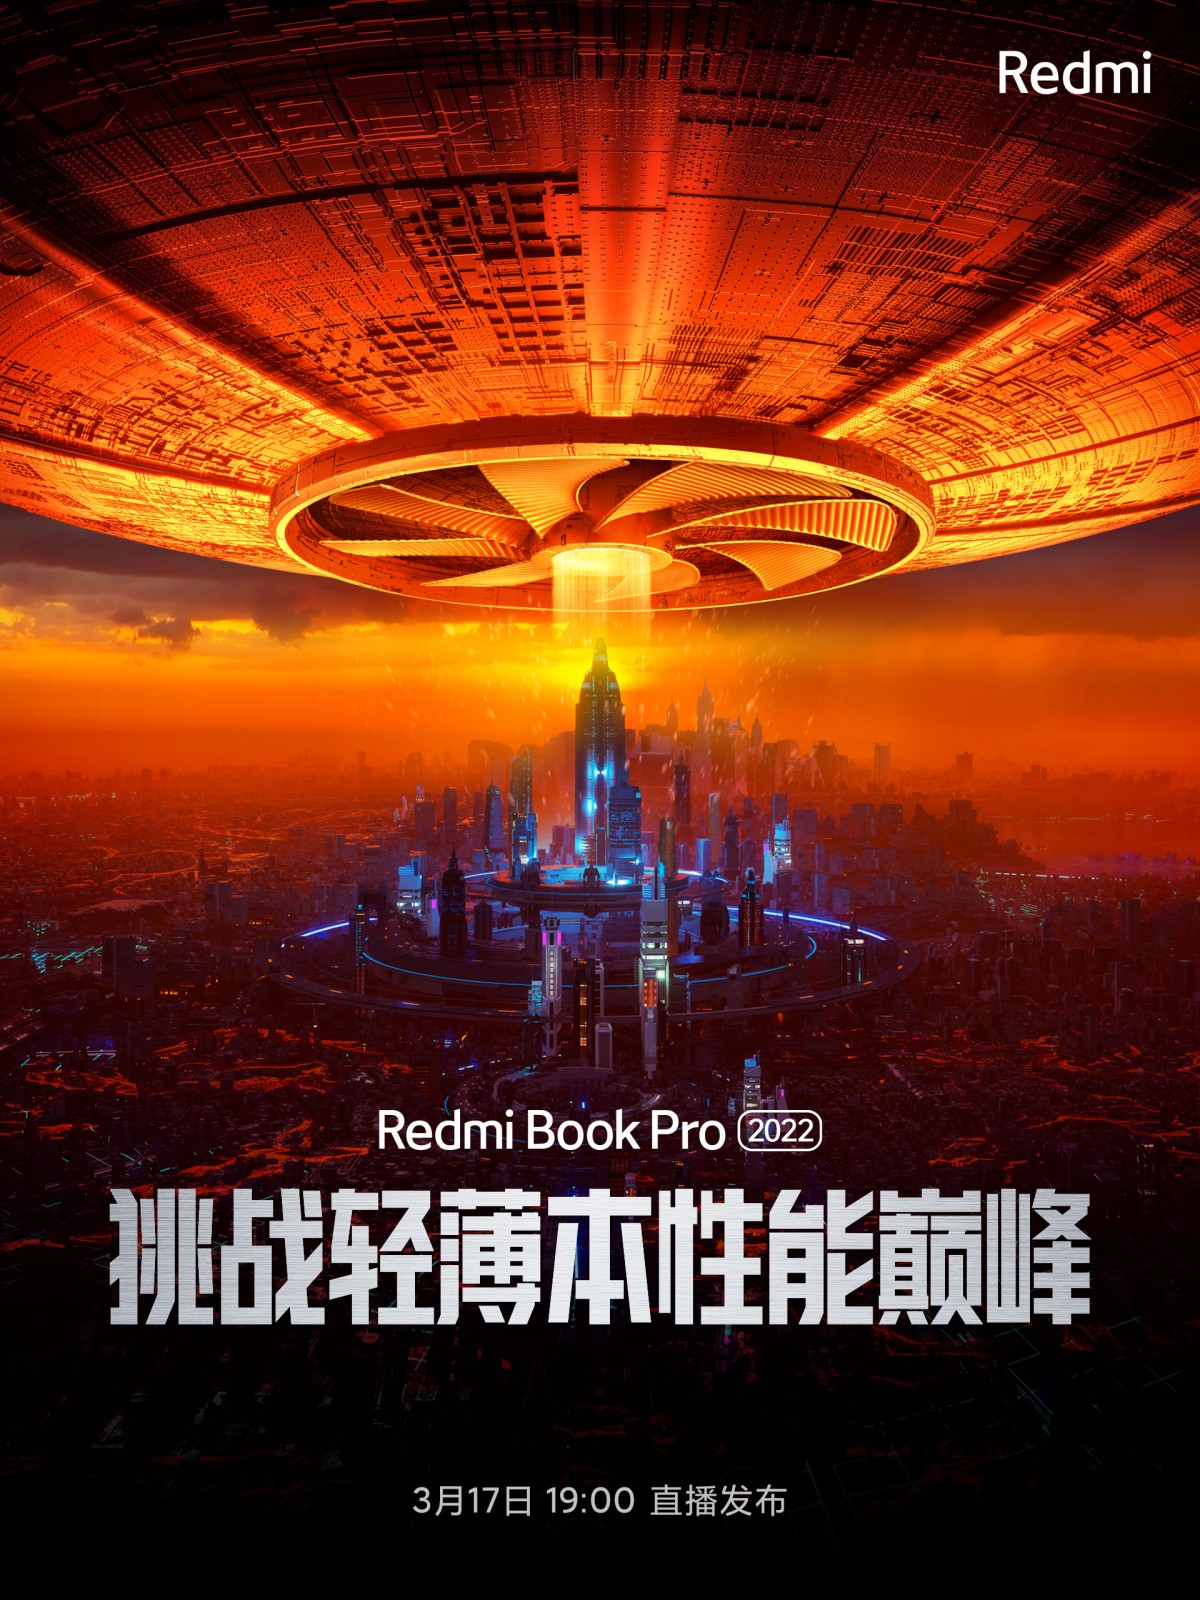 RedmiBook Pro 2022 llega el 17 de marzo con CPU Intel Core Gen 12